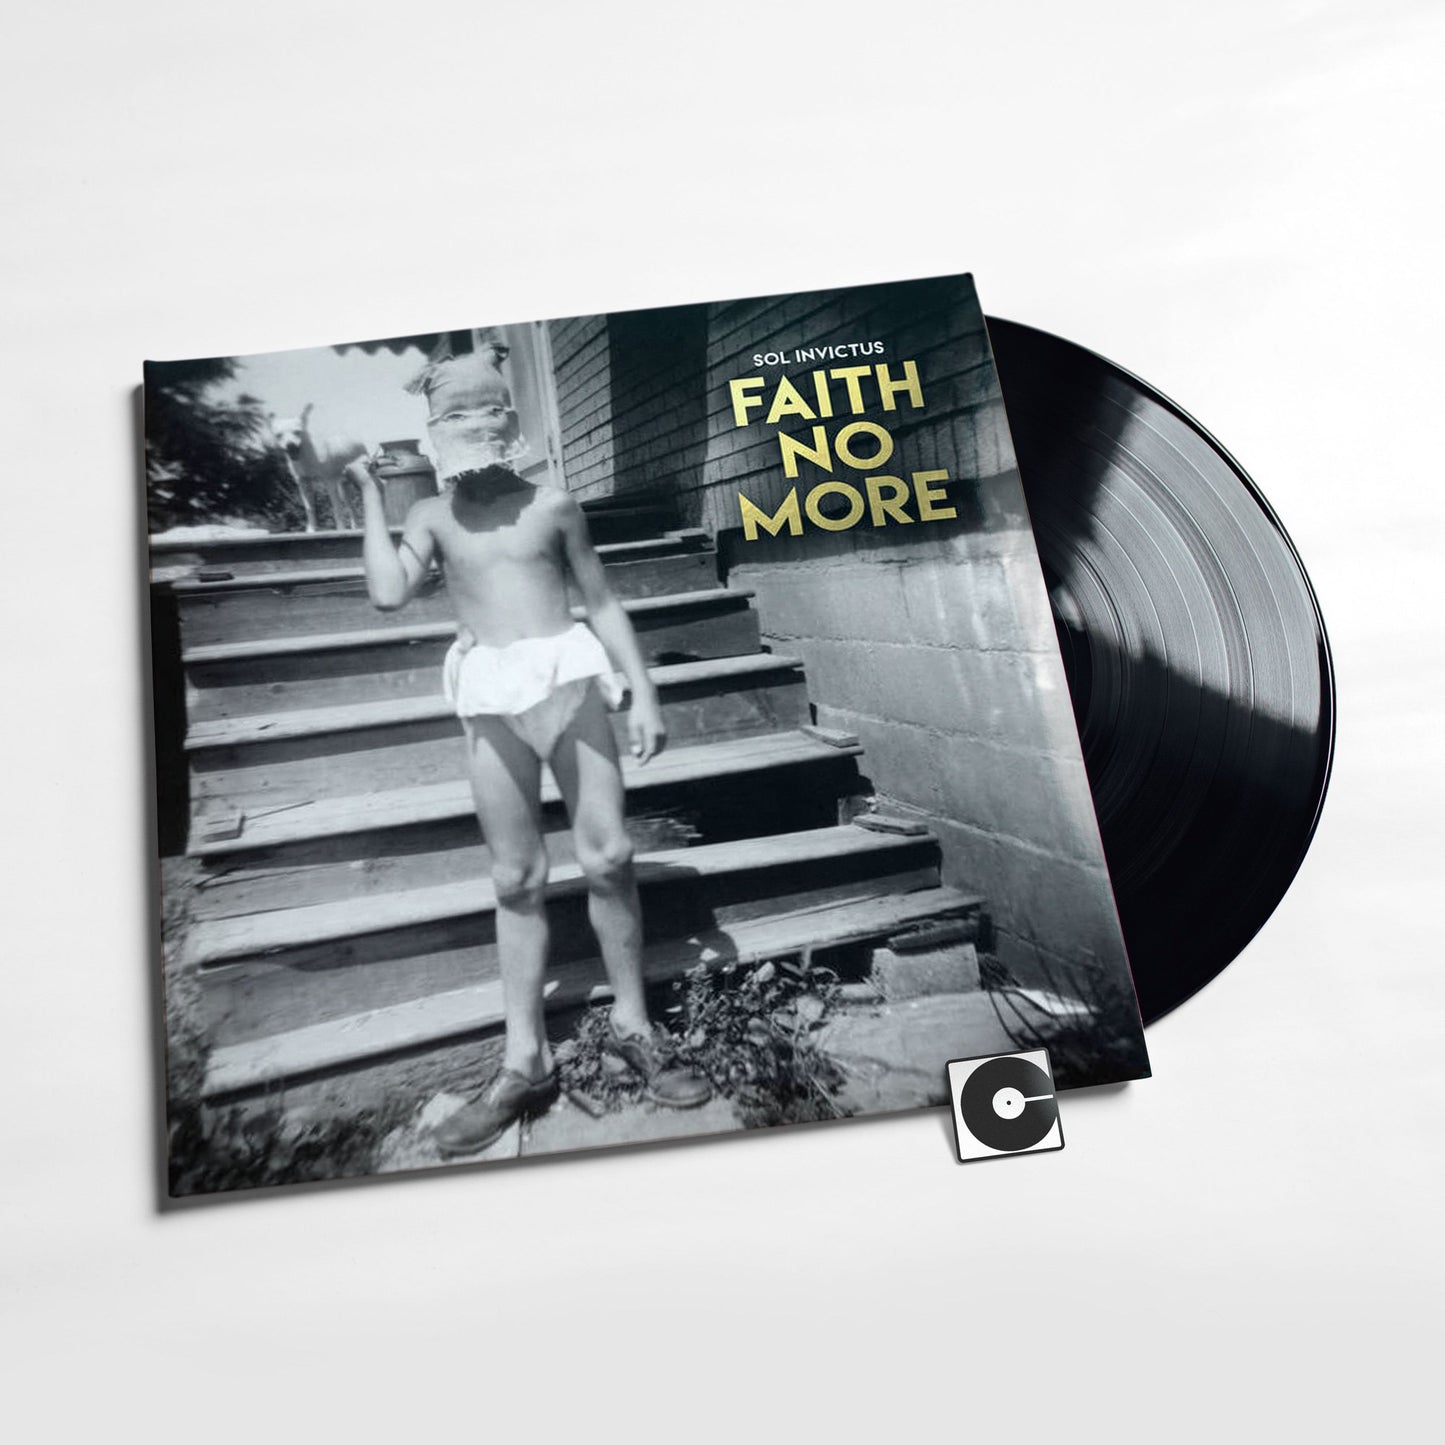 Faith No More - "Sol Invictus"